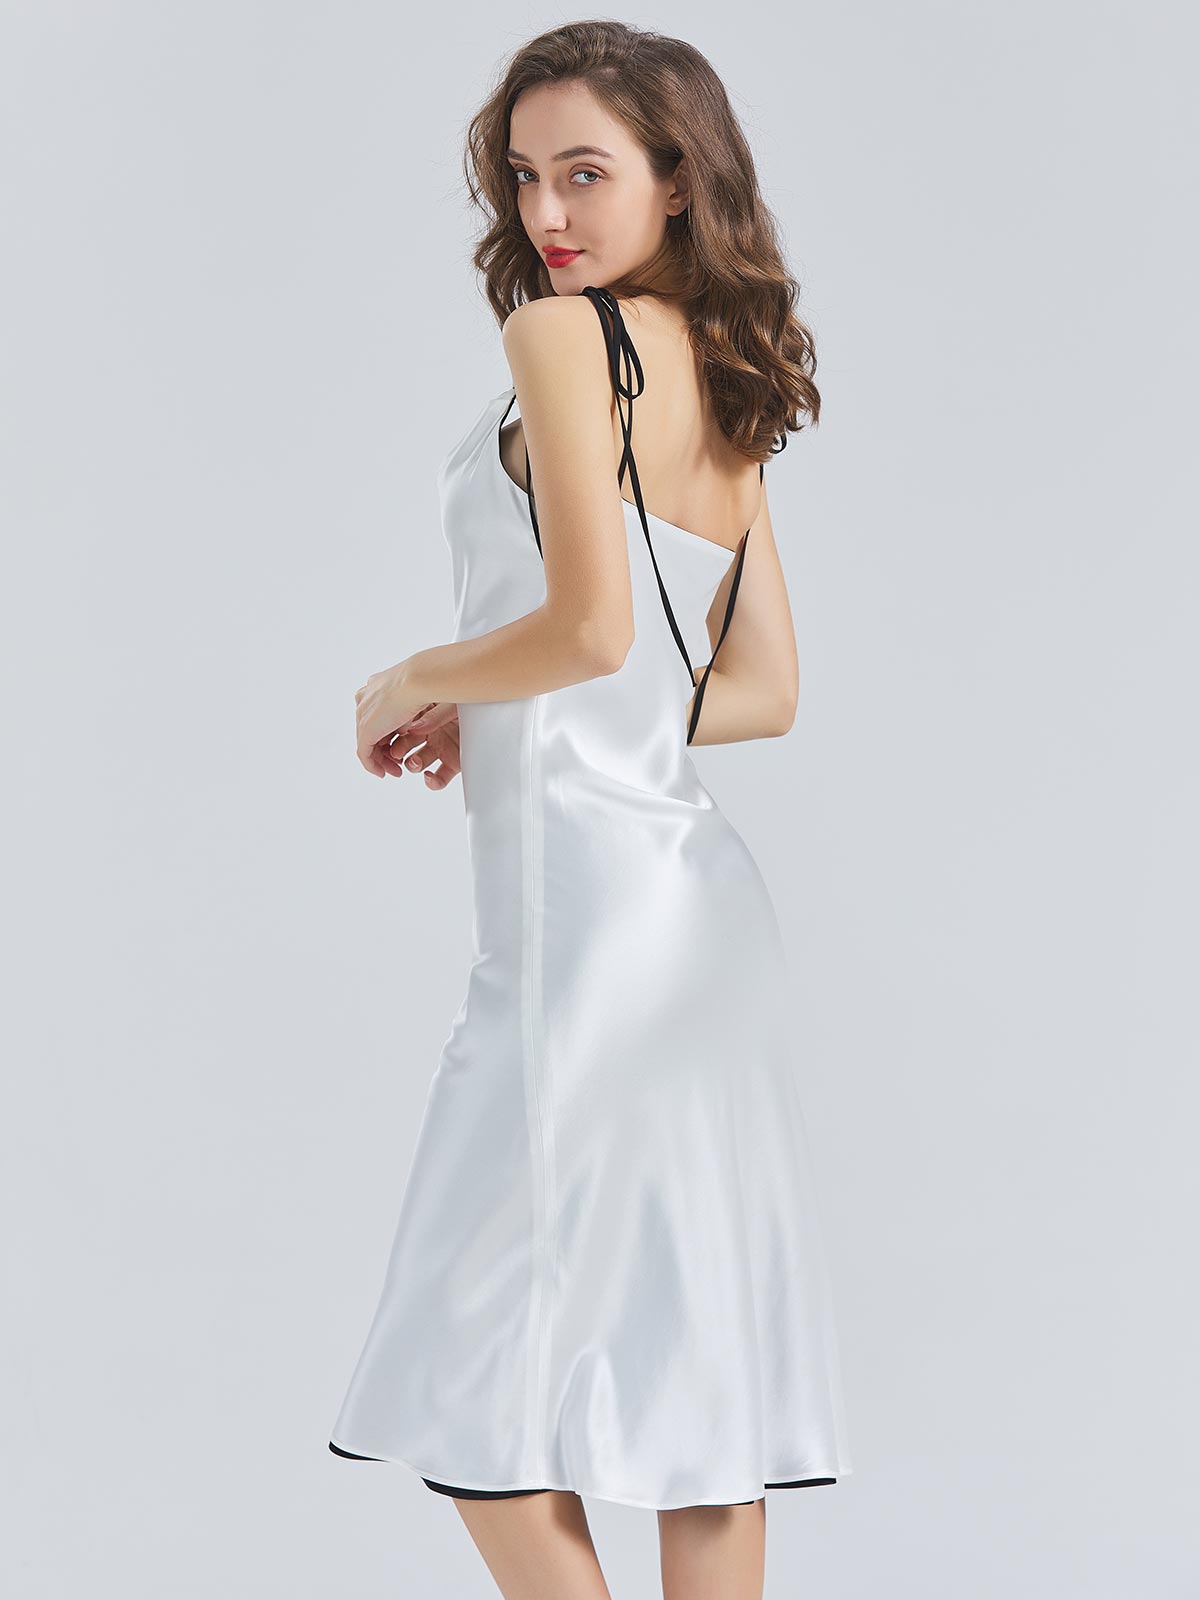 MissJophiel Acetate Satin Adjustable Strap Cowl Neckline Tea Lenght Midi Reversible Dresses Cocktail Wedding Party Gown